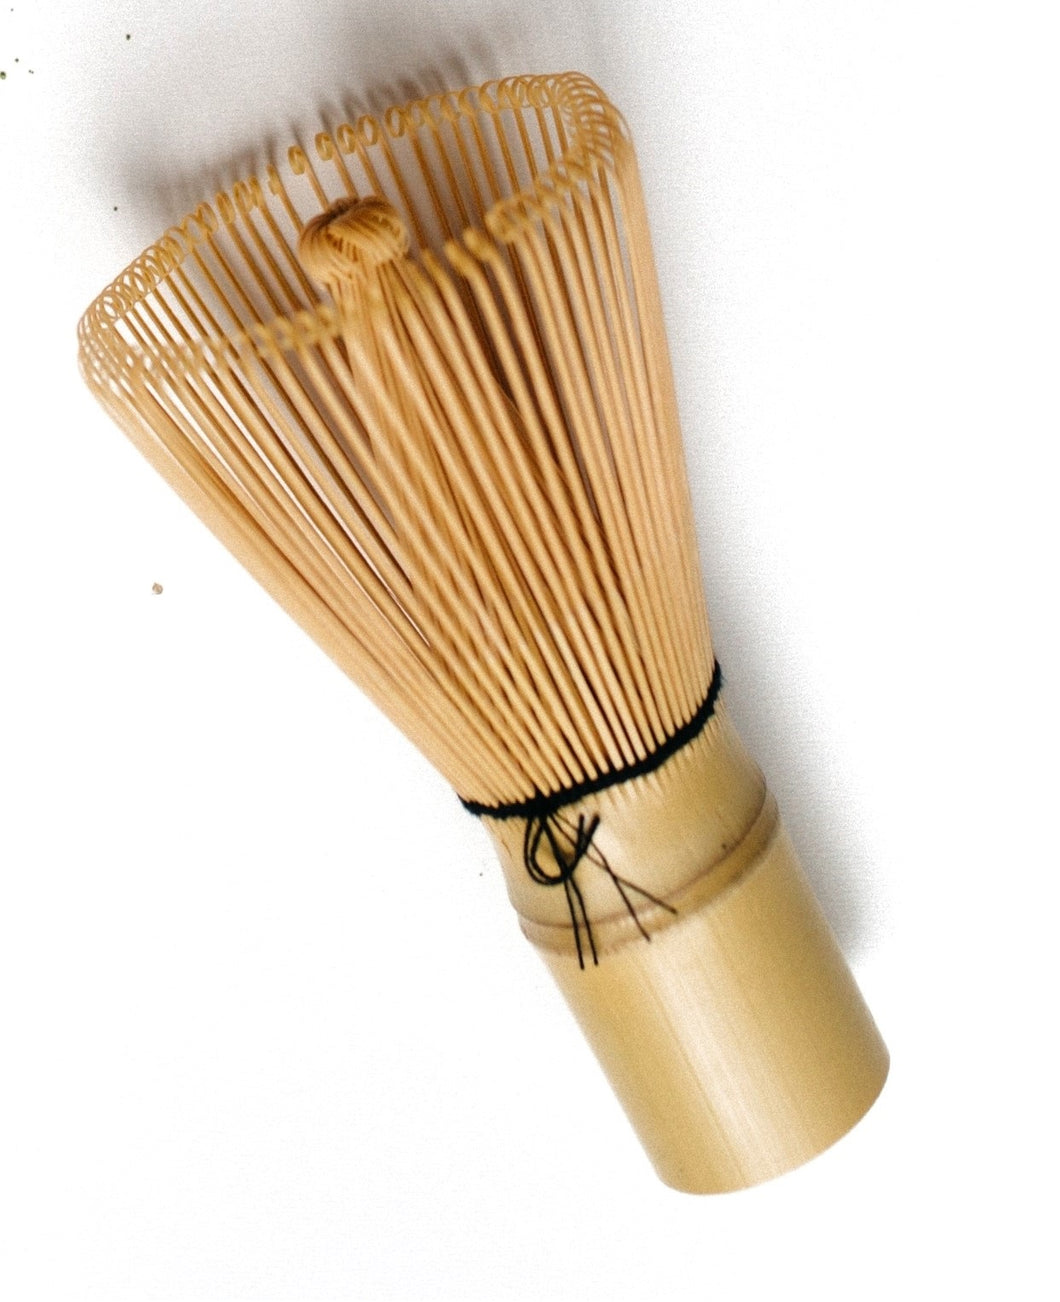 Bamboo Whisk 100 prong - Matcha Oishii – MatchaOishii